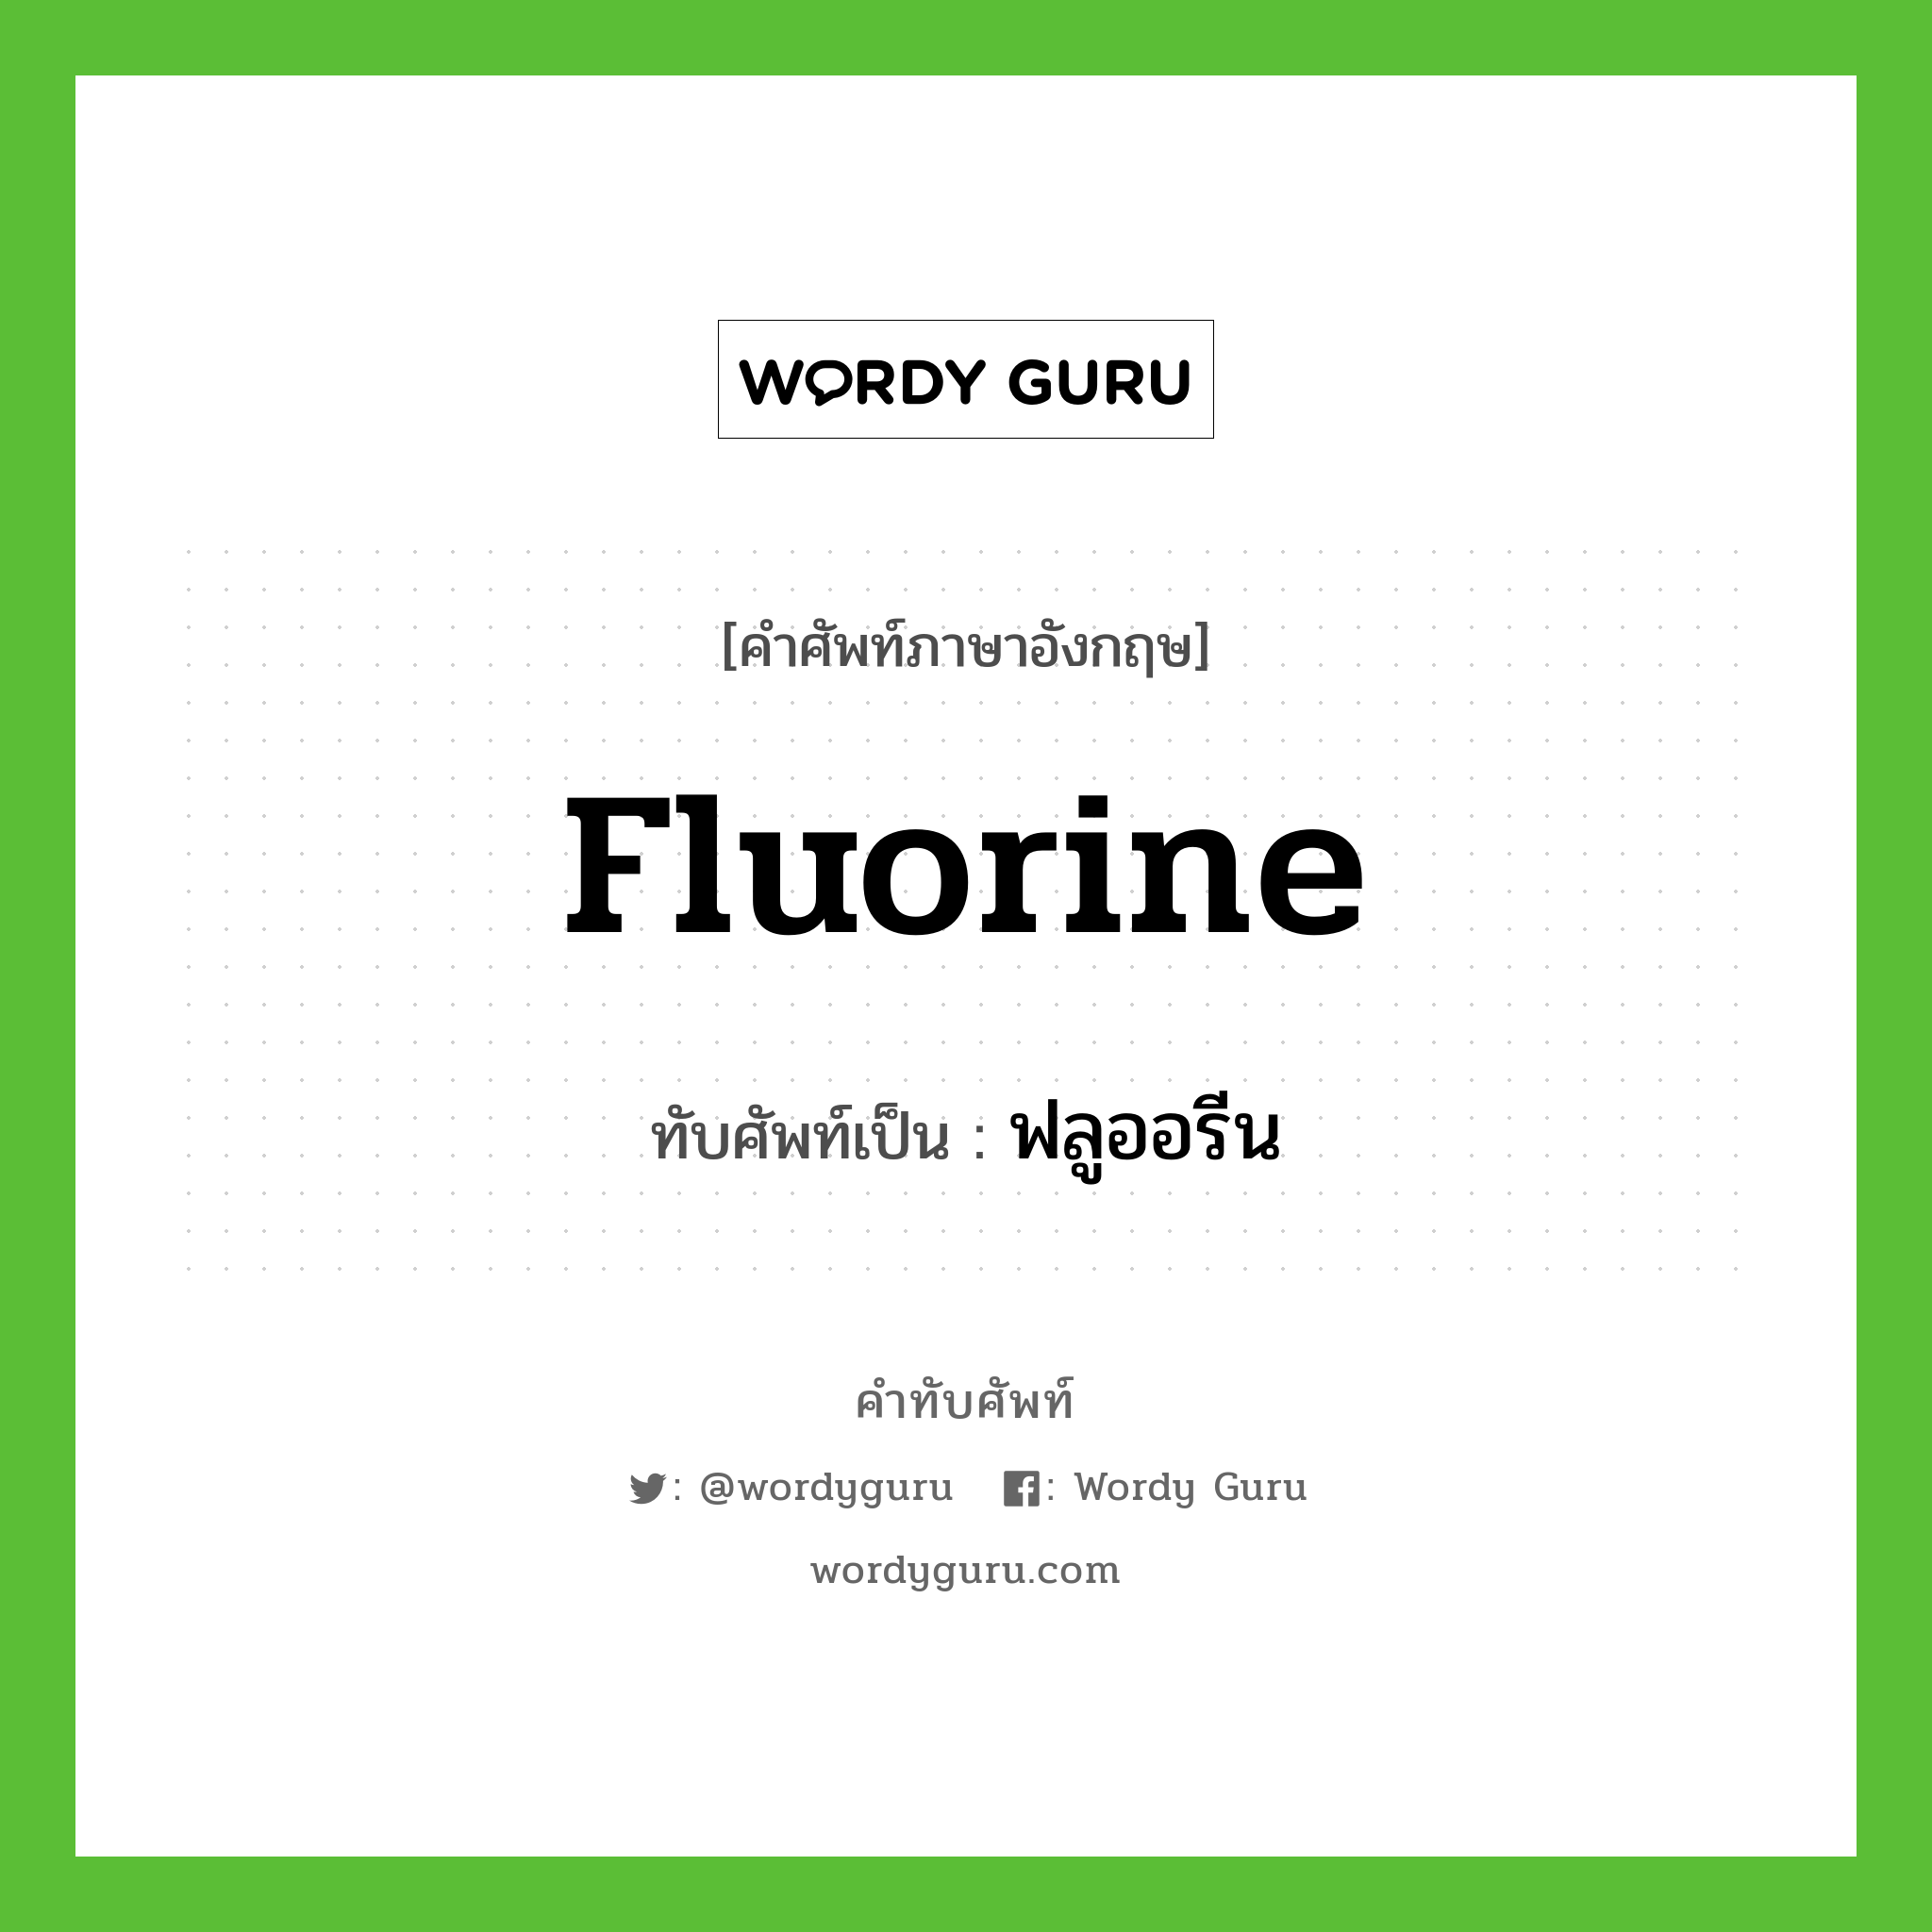 ฟลูออรีน เขียนอย่างไร?, คำศัพท์ภาษาอังกฤษ ฟลูออรีน ทับศัพท์เป็น fluorine